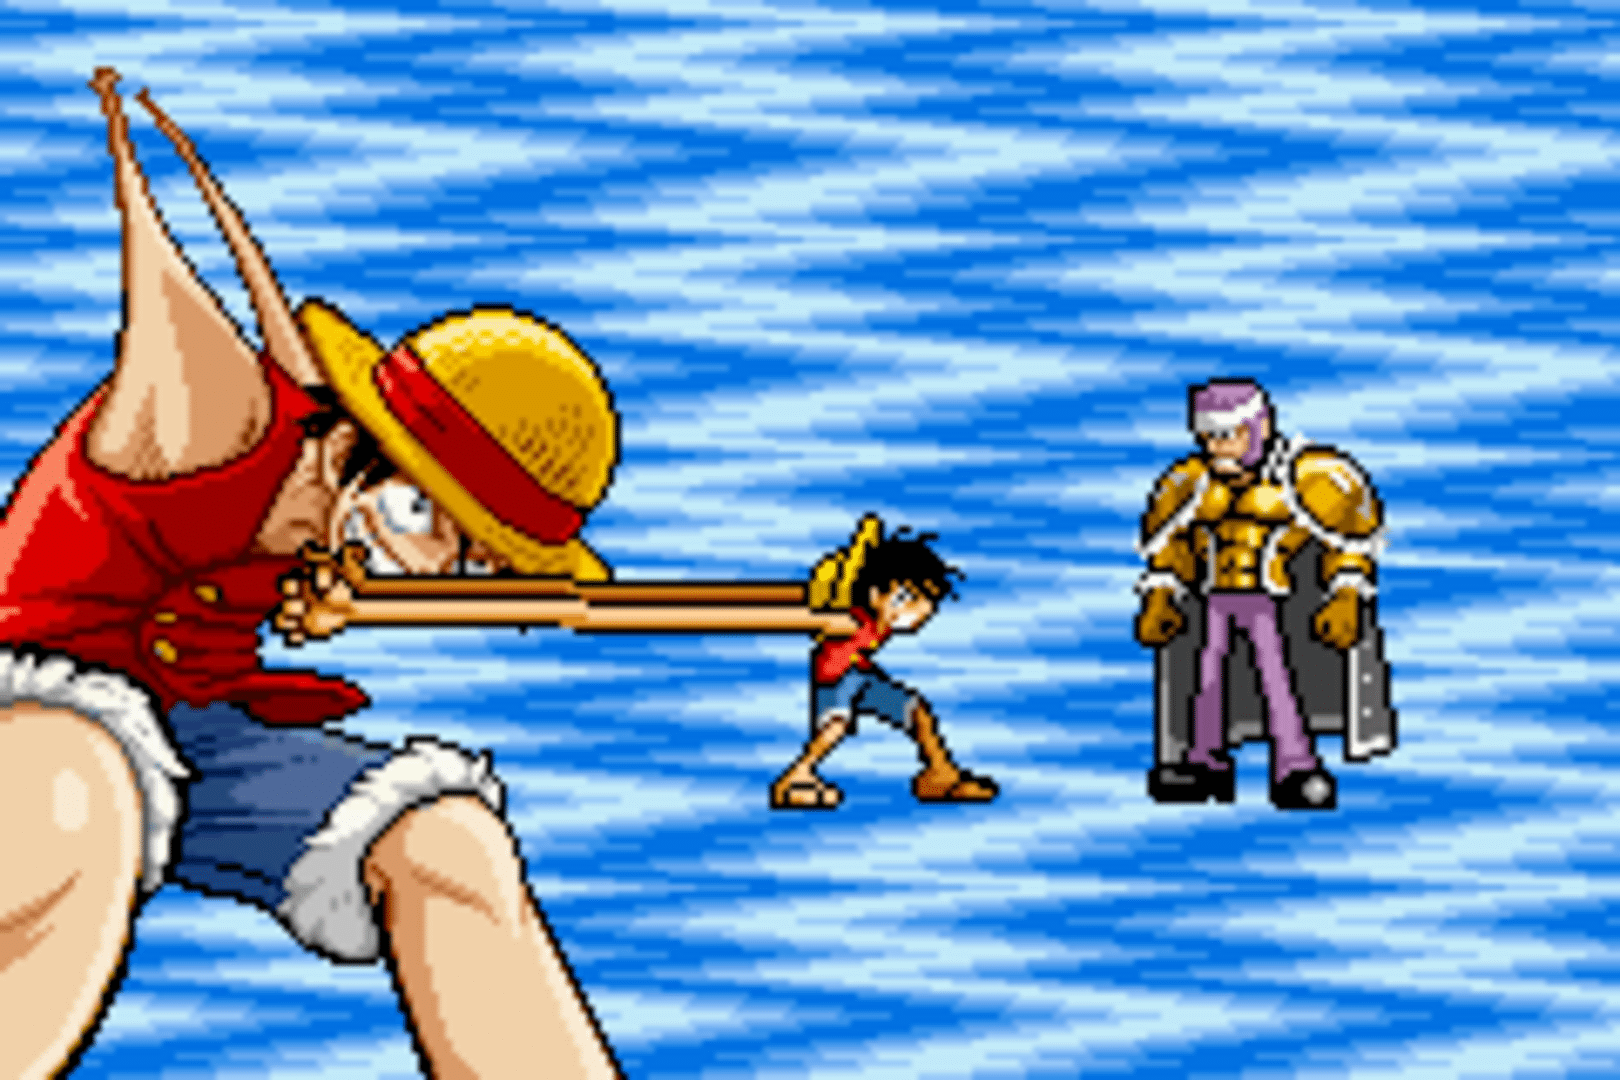 Shonen Jump's One Piece screenshot